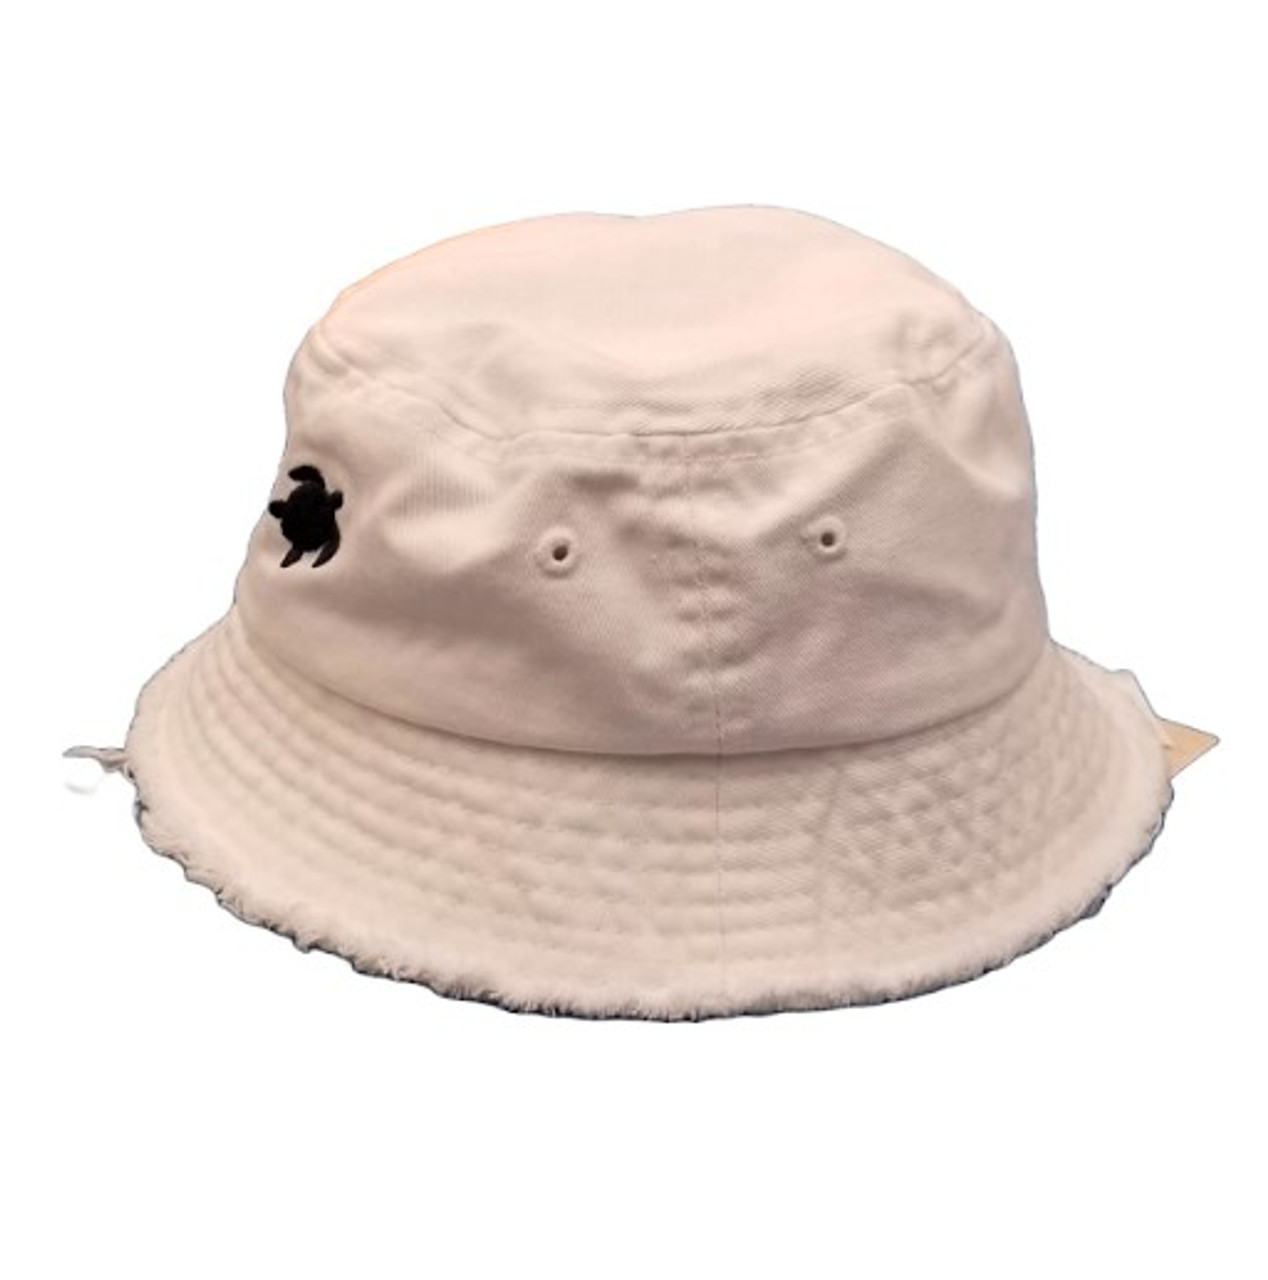 Panama Jack Infant Bucket Hat - White